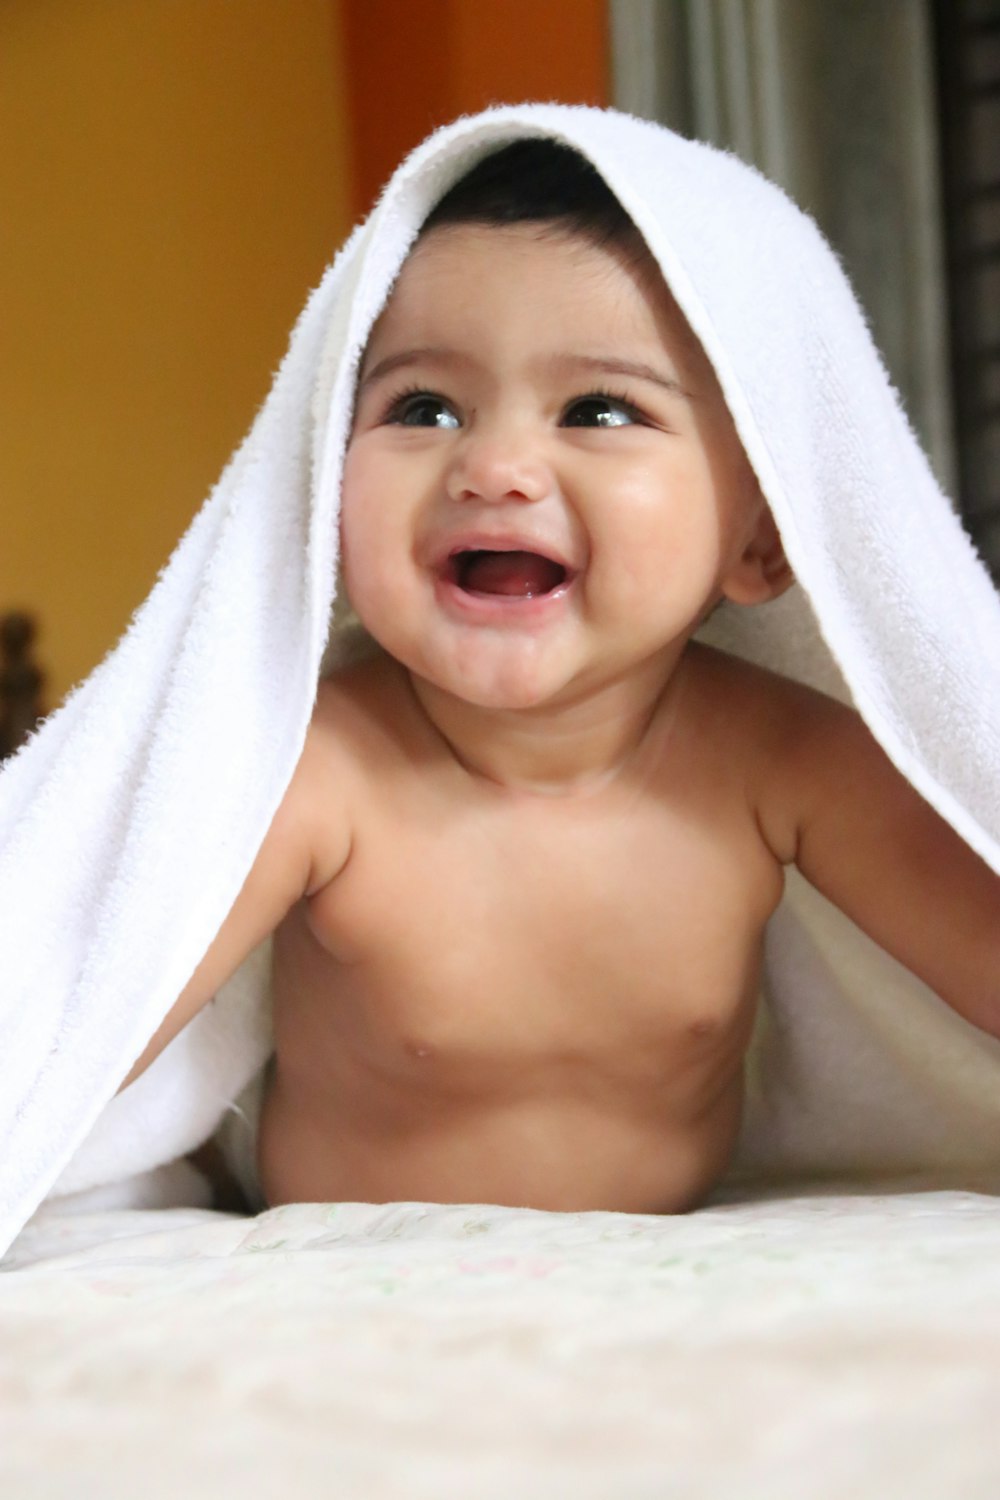 bambino in topless coperto con asciugamano bianco